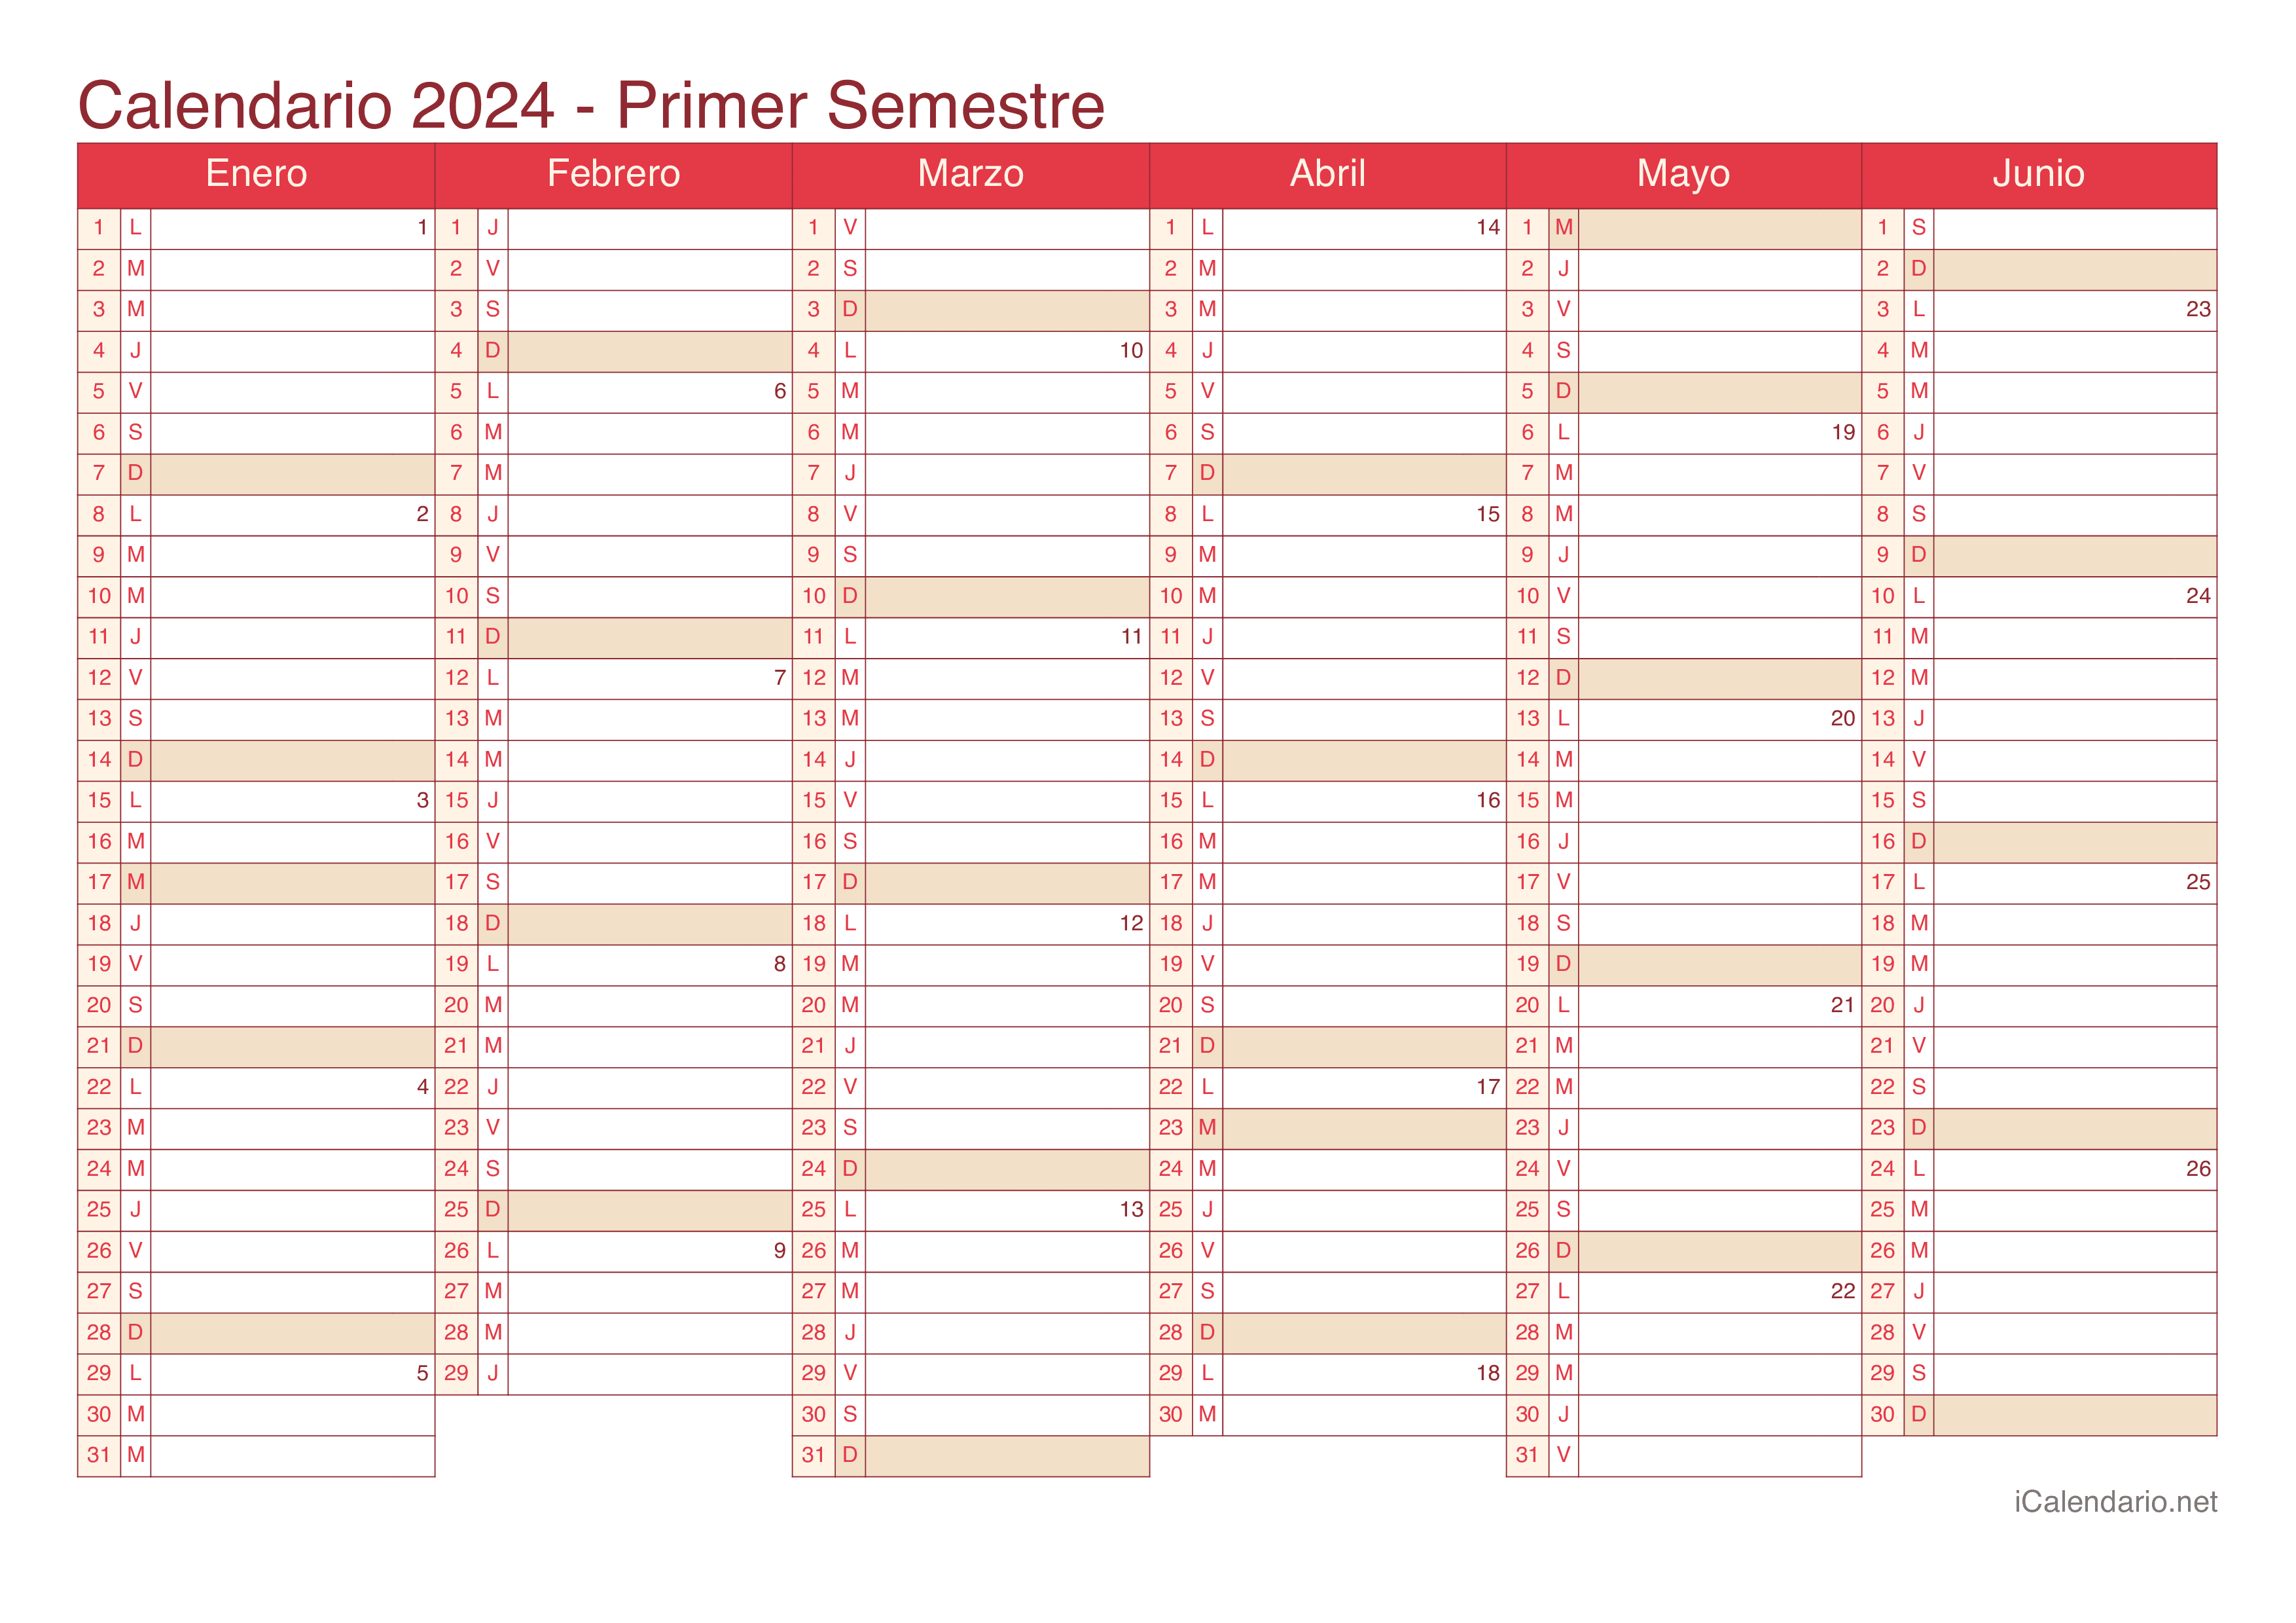 Calendario por semestre com números da semana 2024 - Cherry